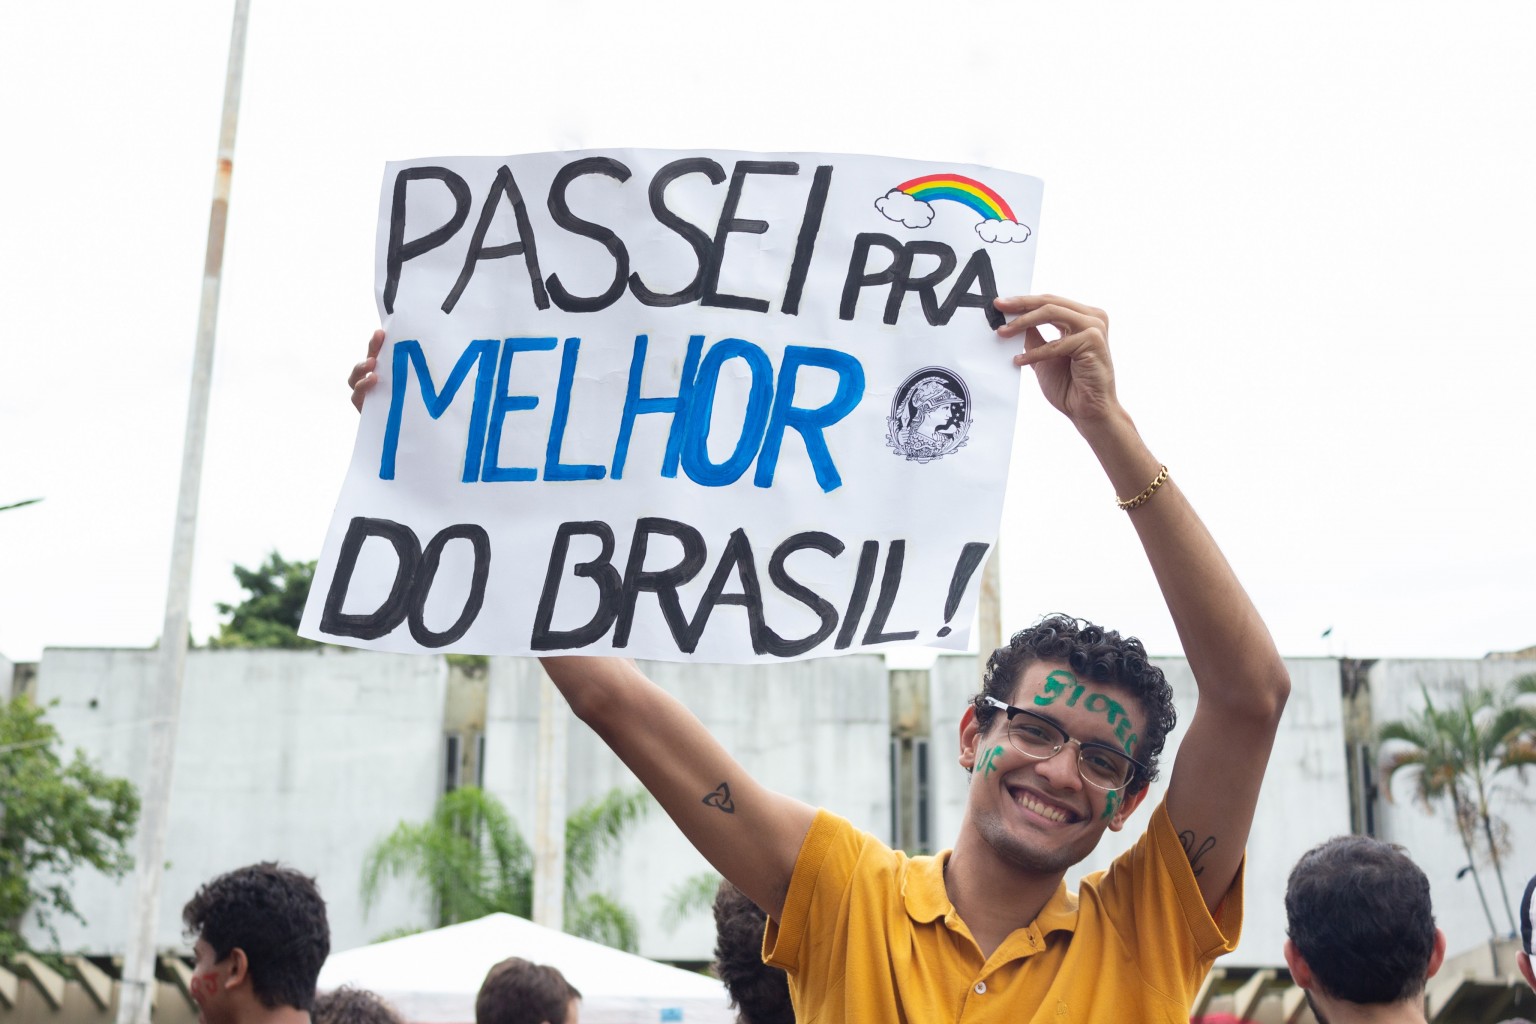 Estudante comemora aprovação para faculdade na UFRJ e segura cartolina em que está escrito "Passei para a melhor do Brasil!"